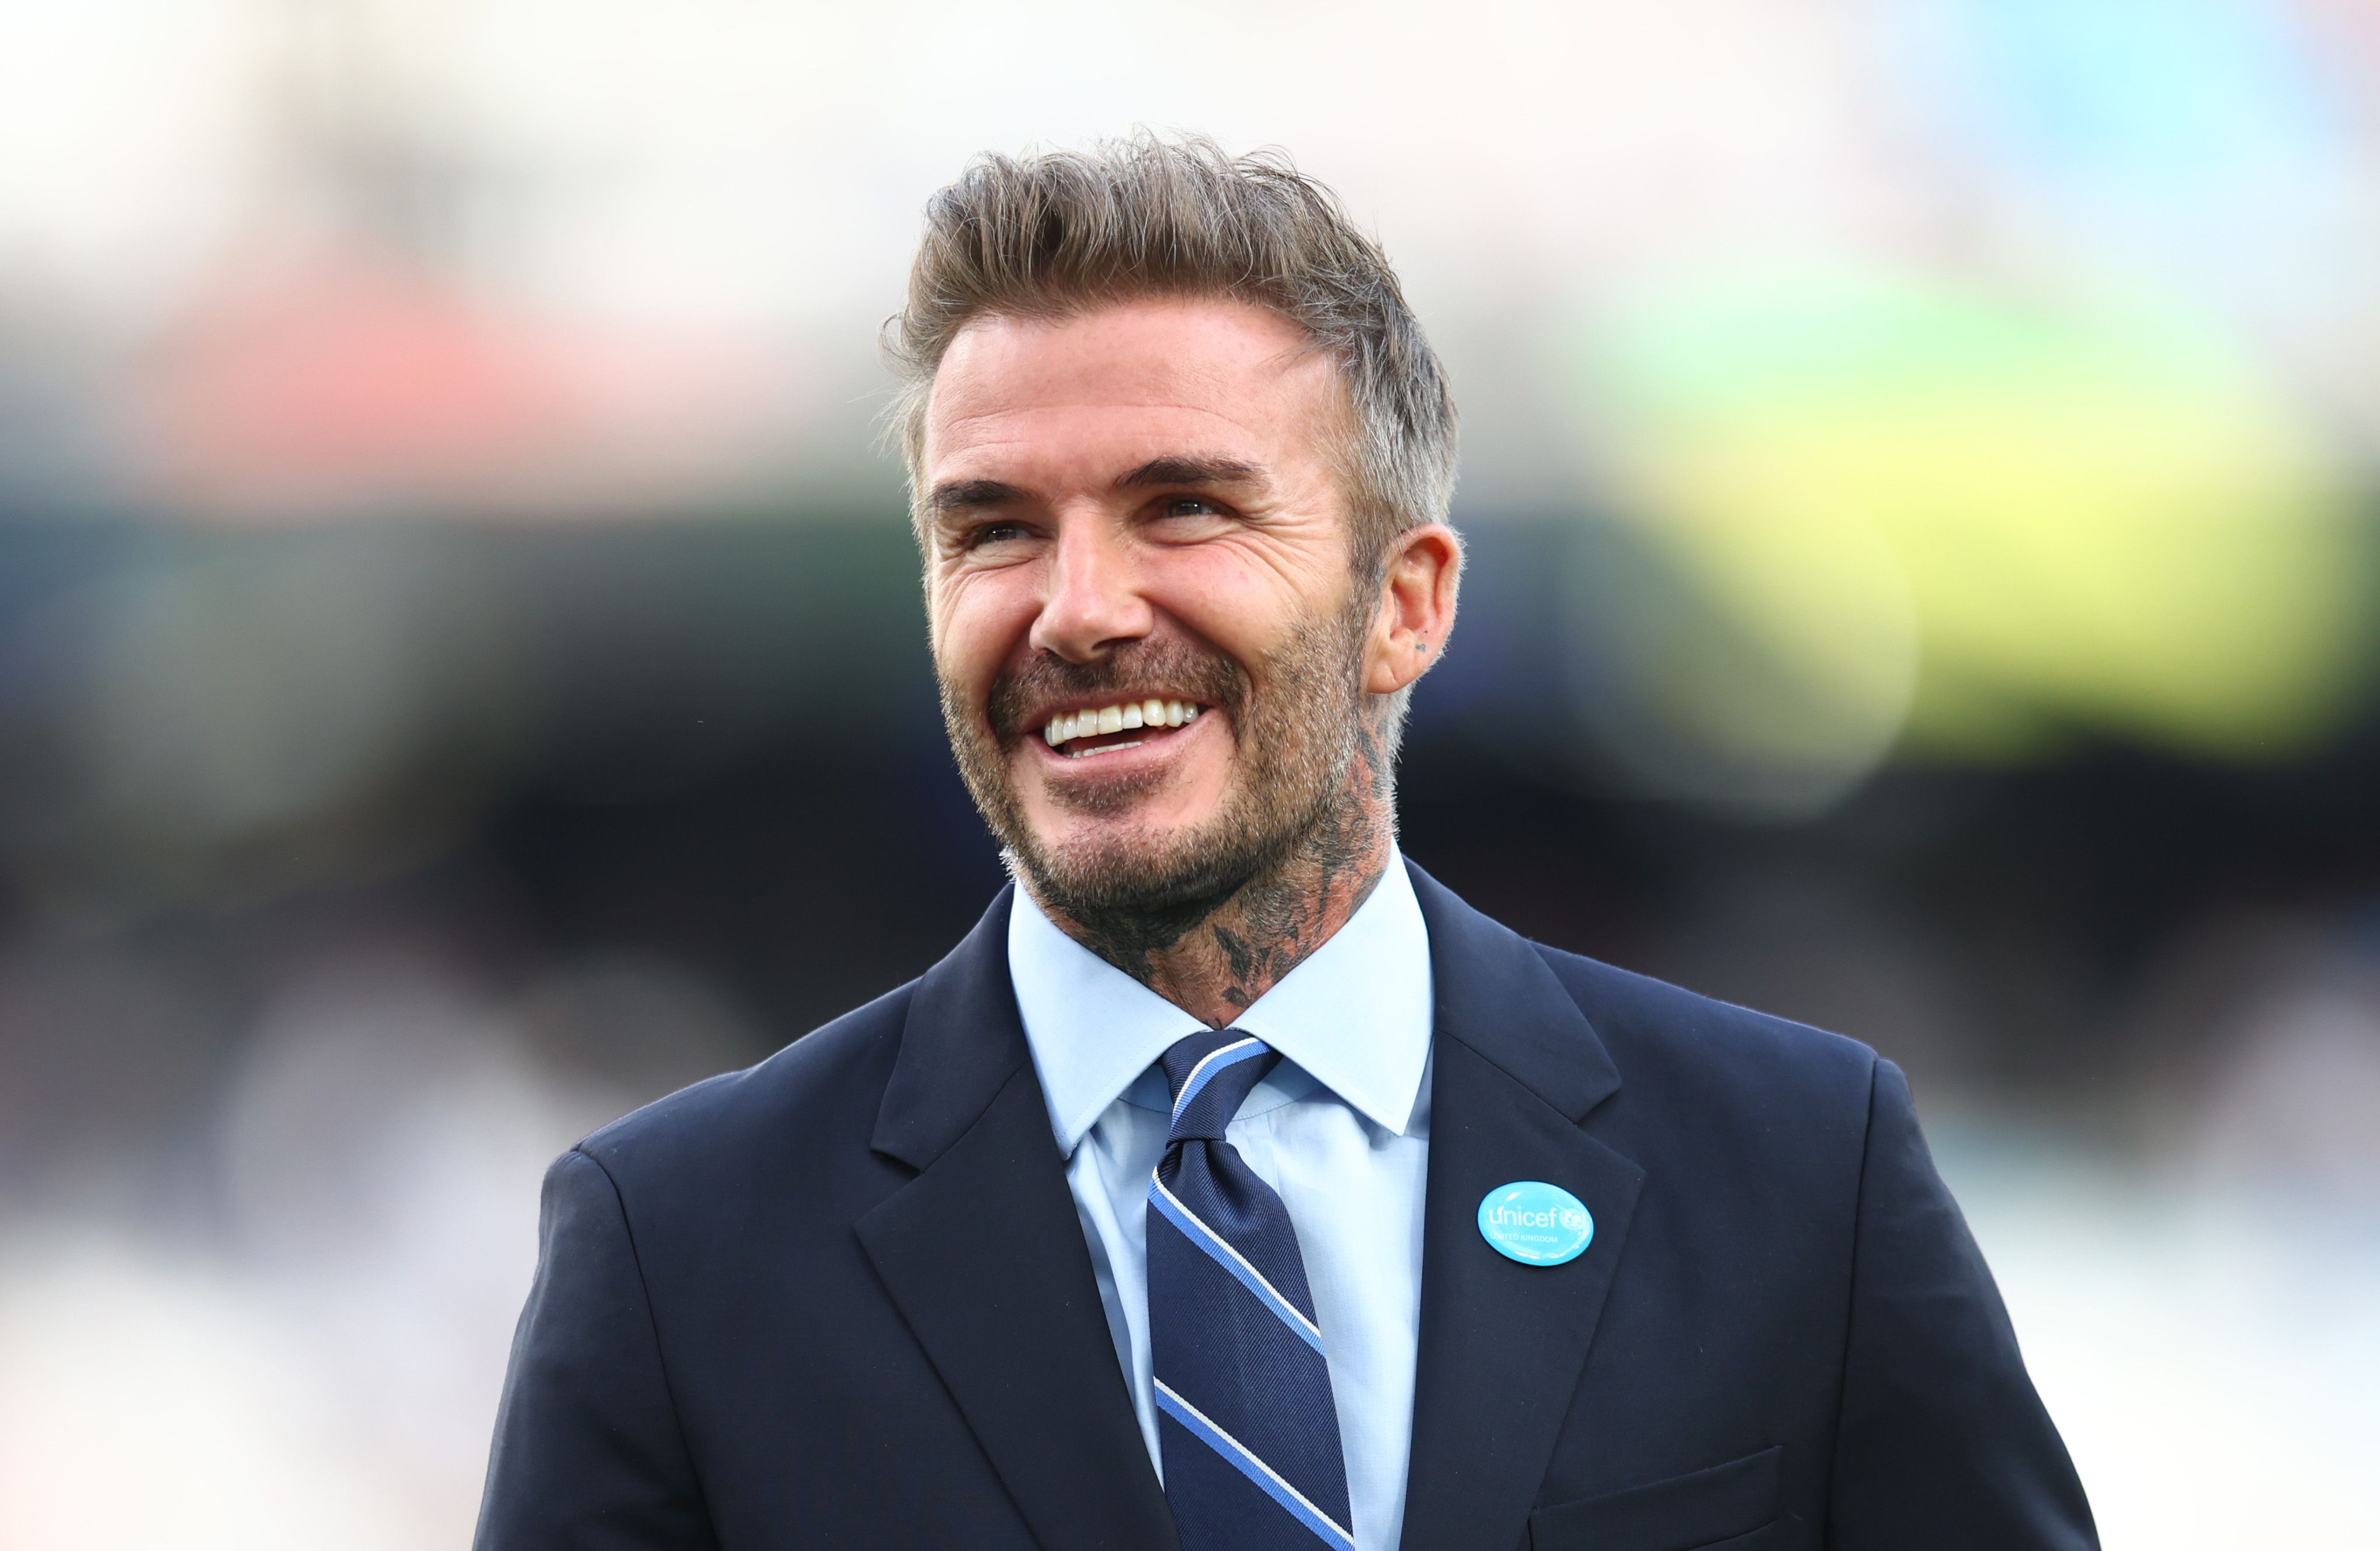 England football legend David Beckham